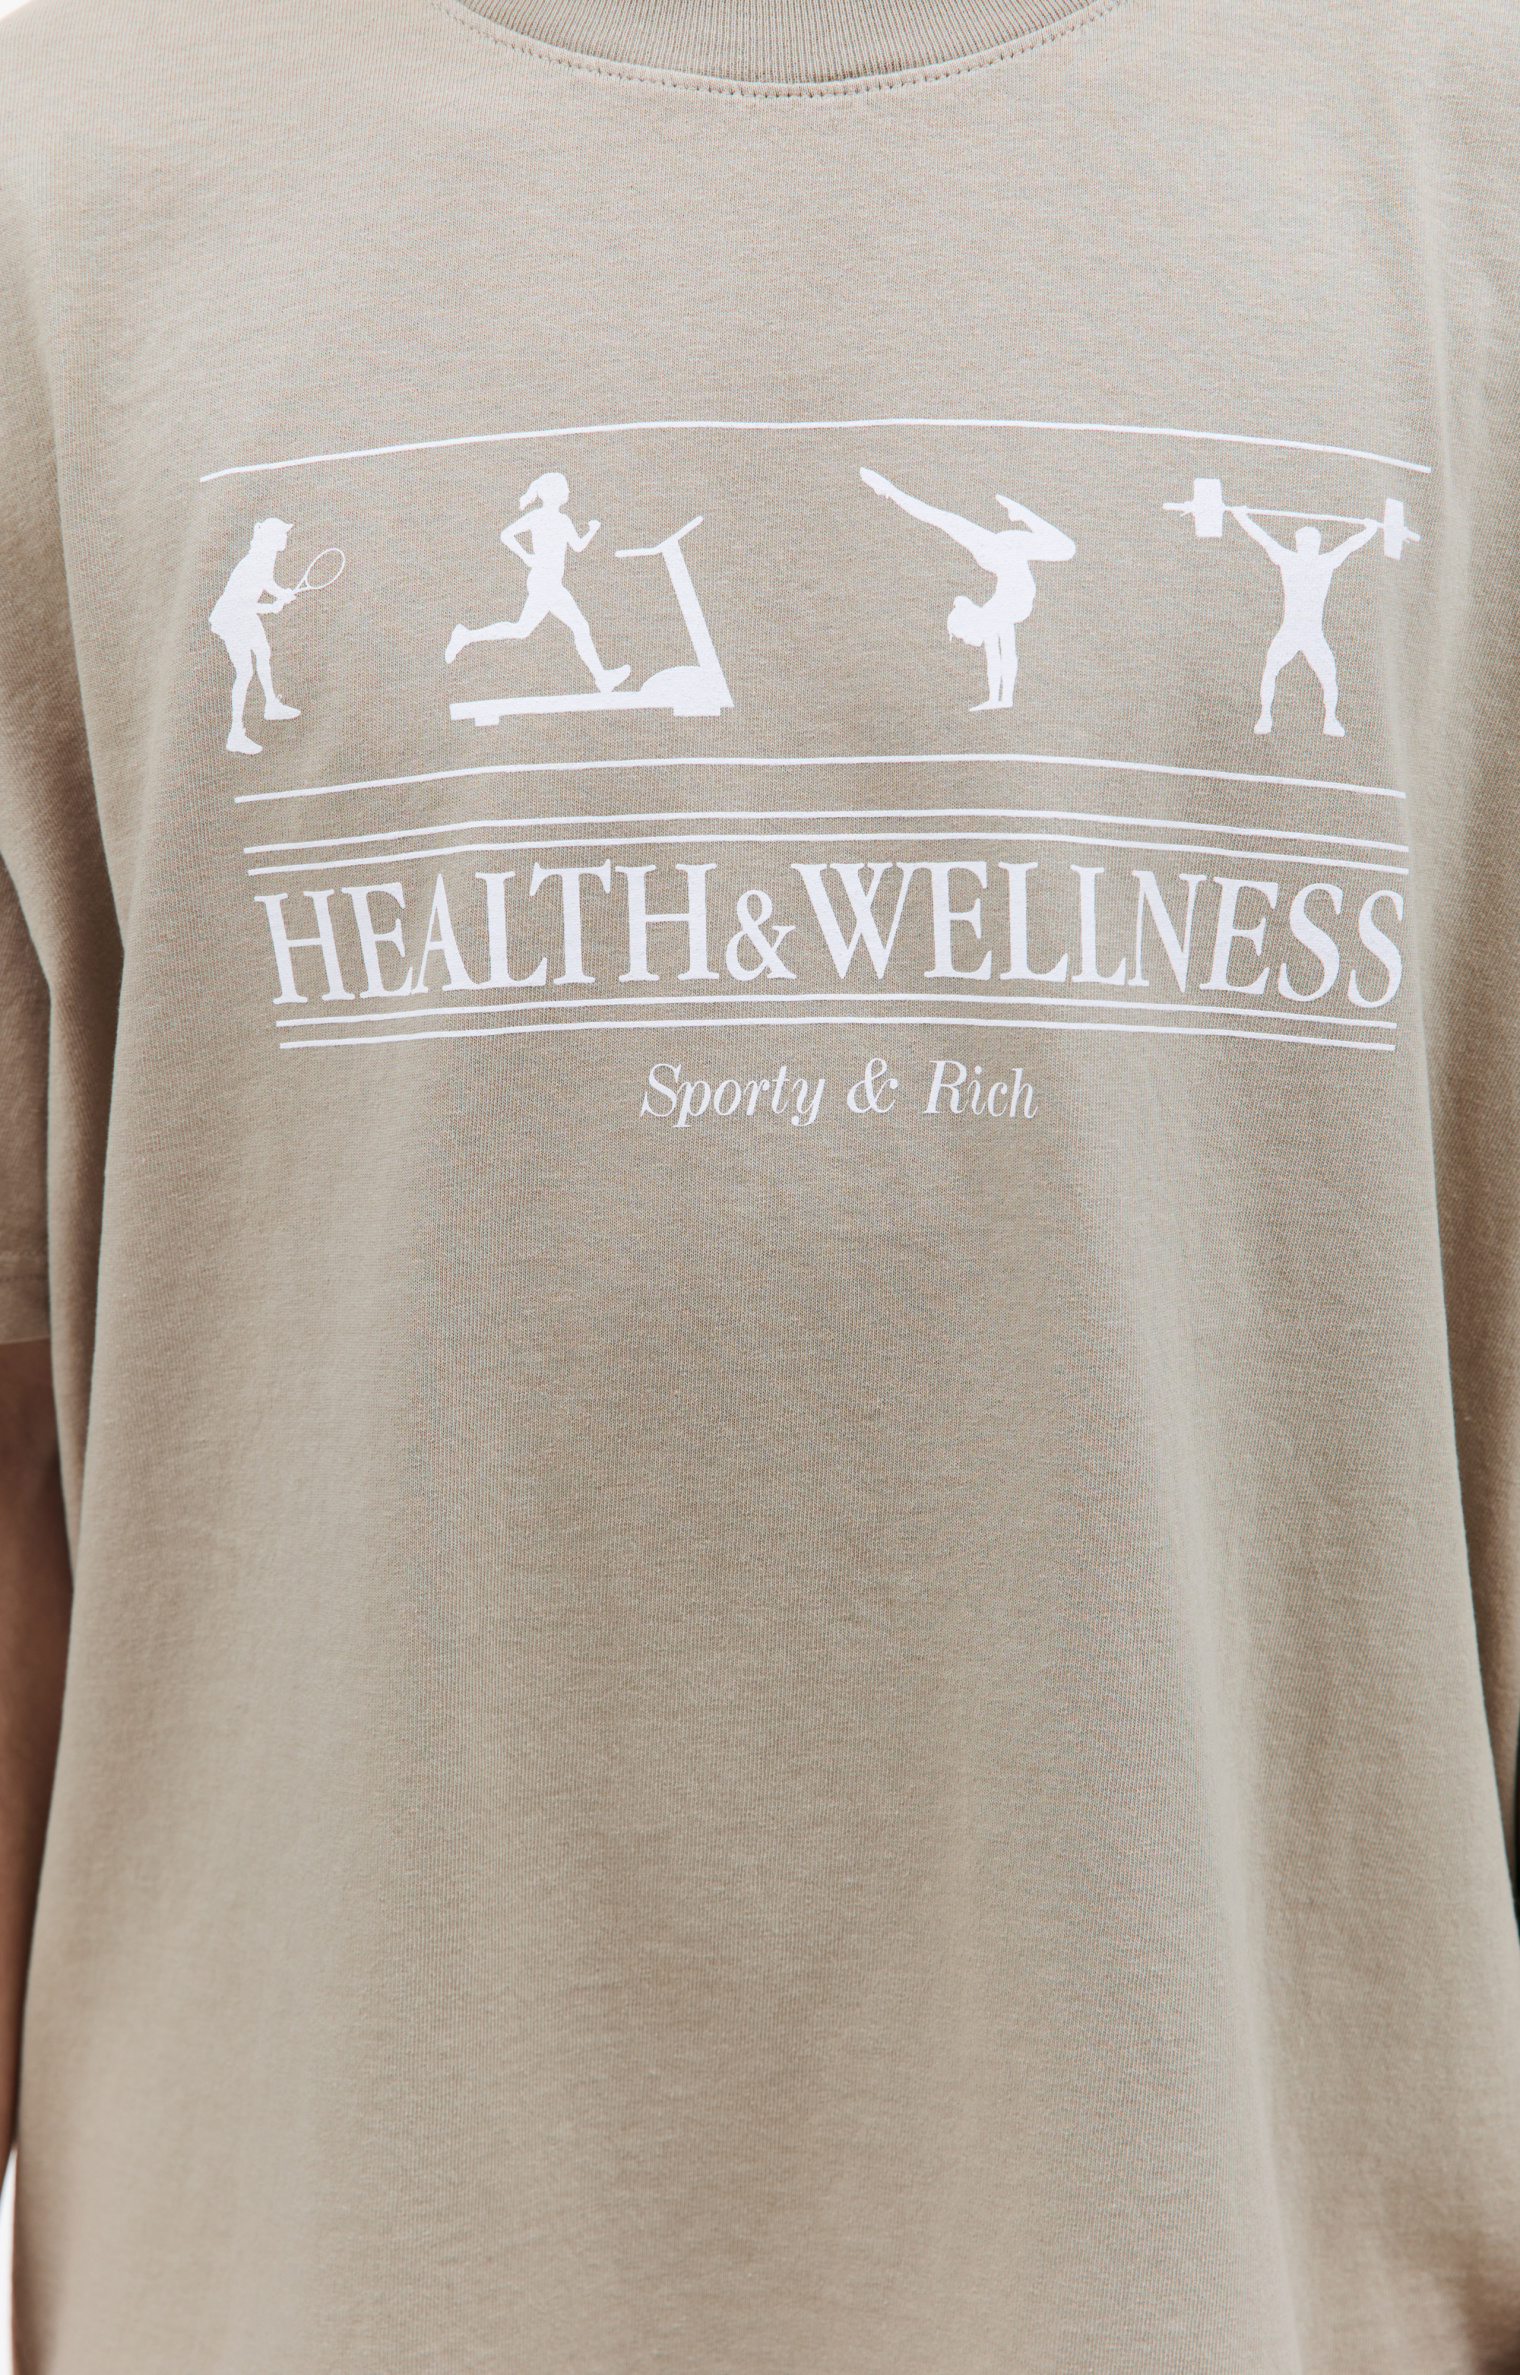 SPORTY & RICH Health & Wellness t-shirt